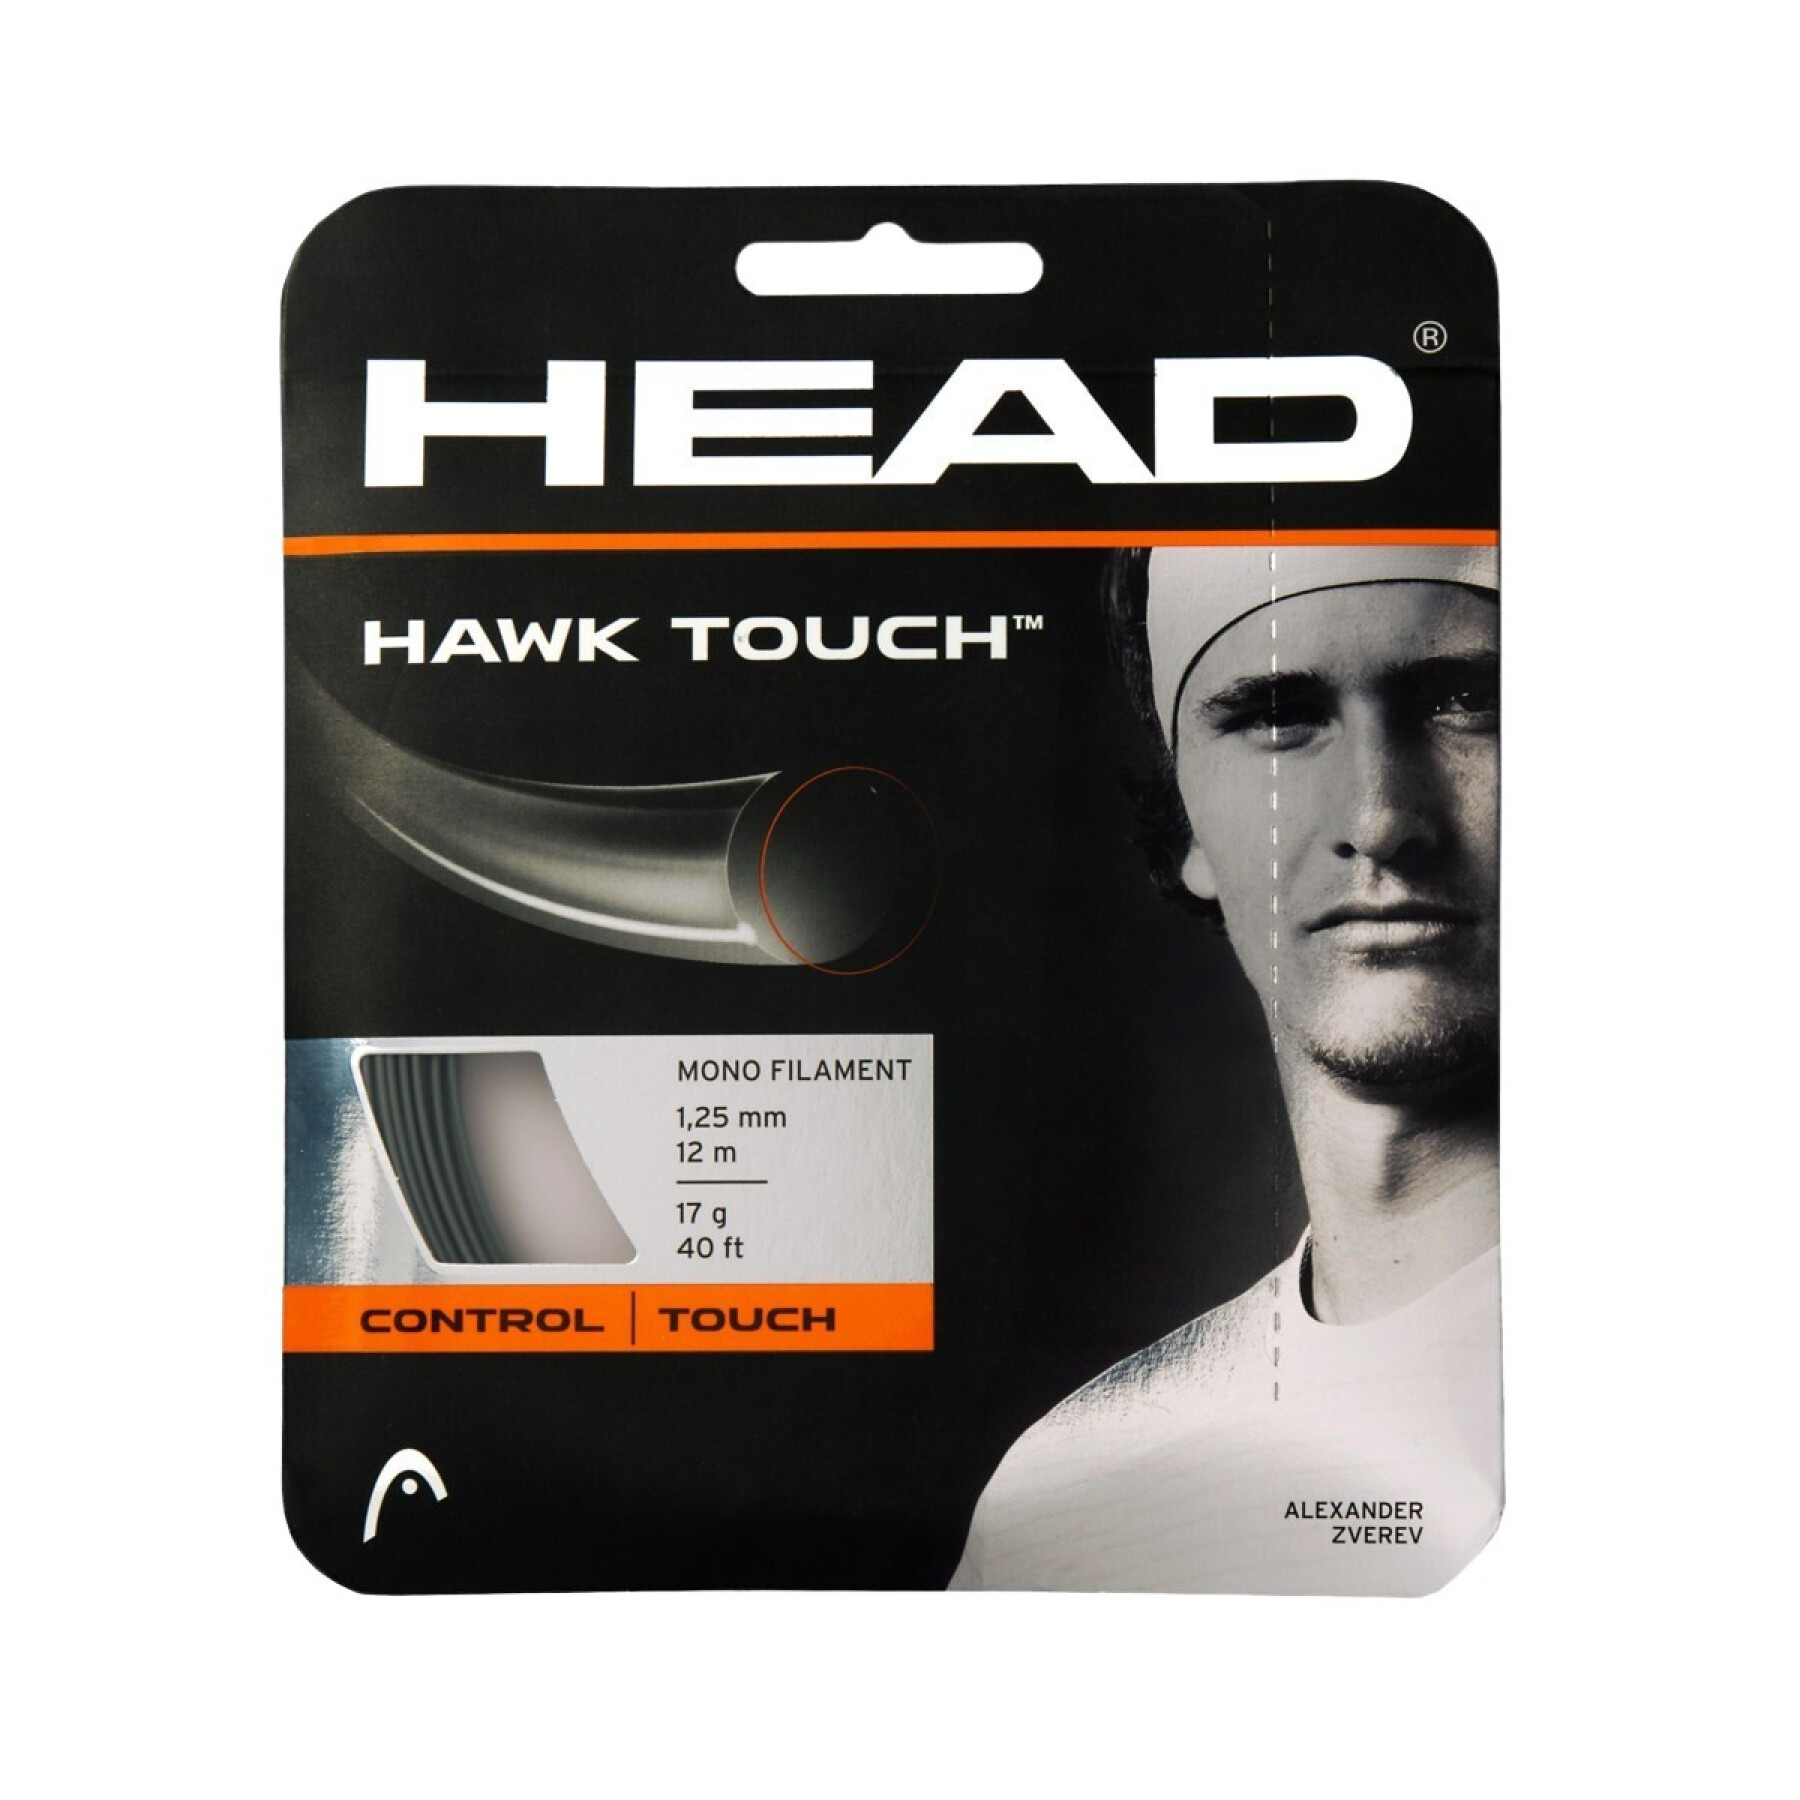 Corde da tennis Head Hawk Touch 12 m